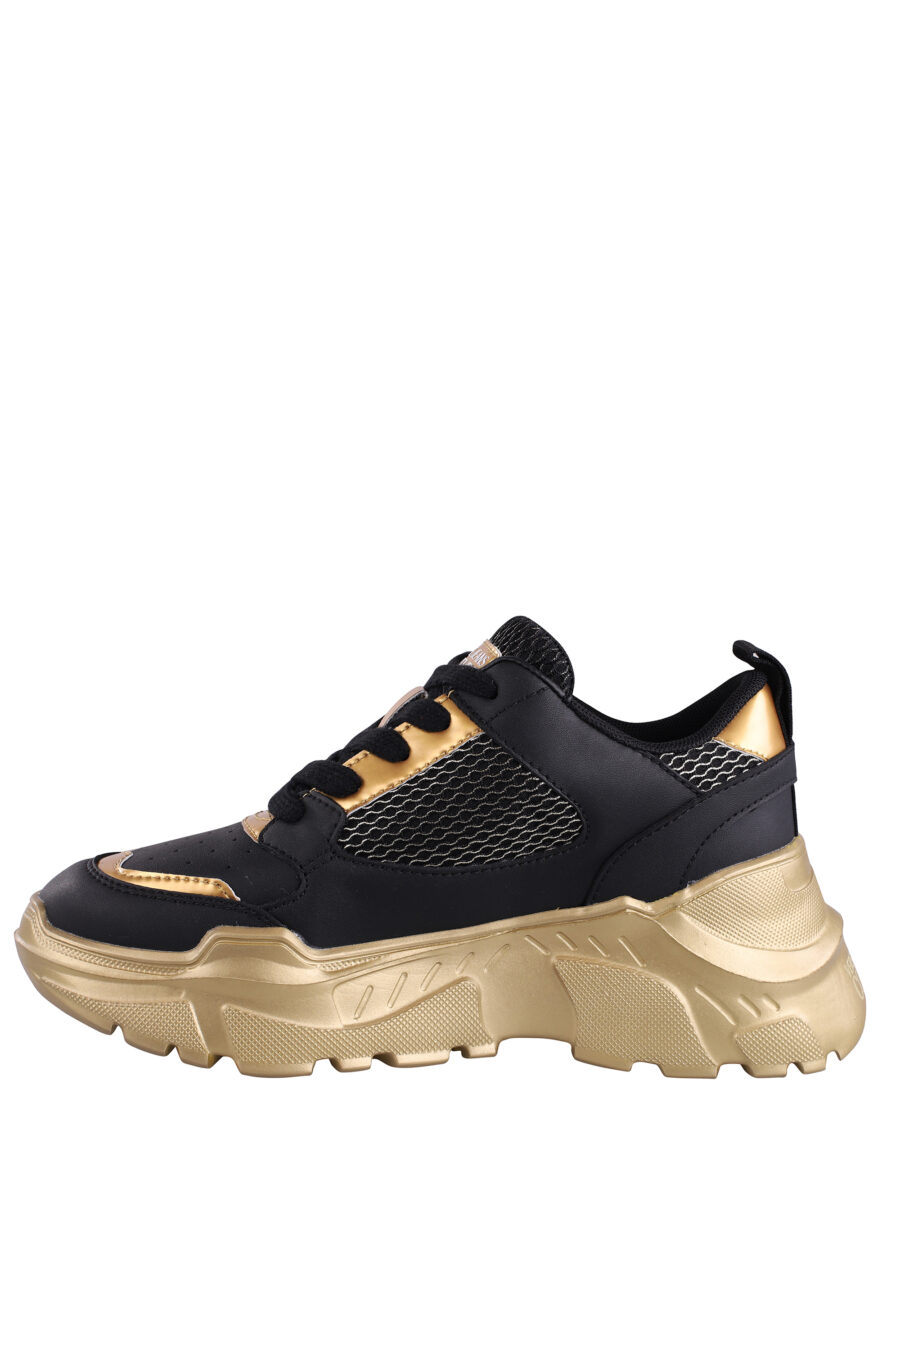 Zapatillas negras con dorado y plataforma - IMG 9087